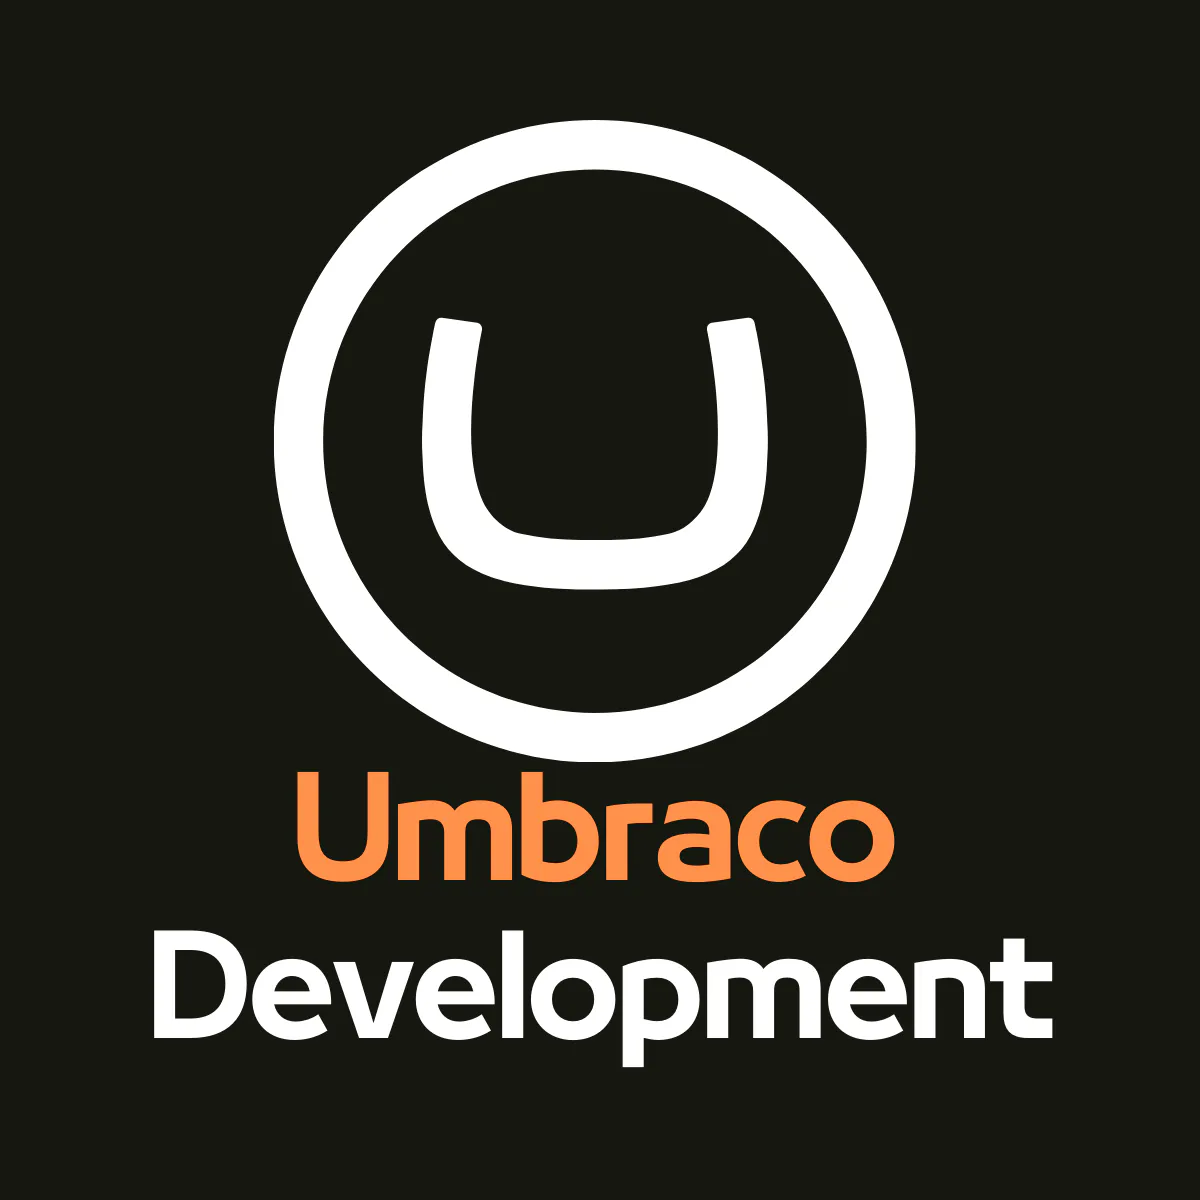 Umbraco Development